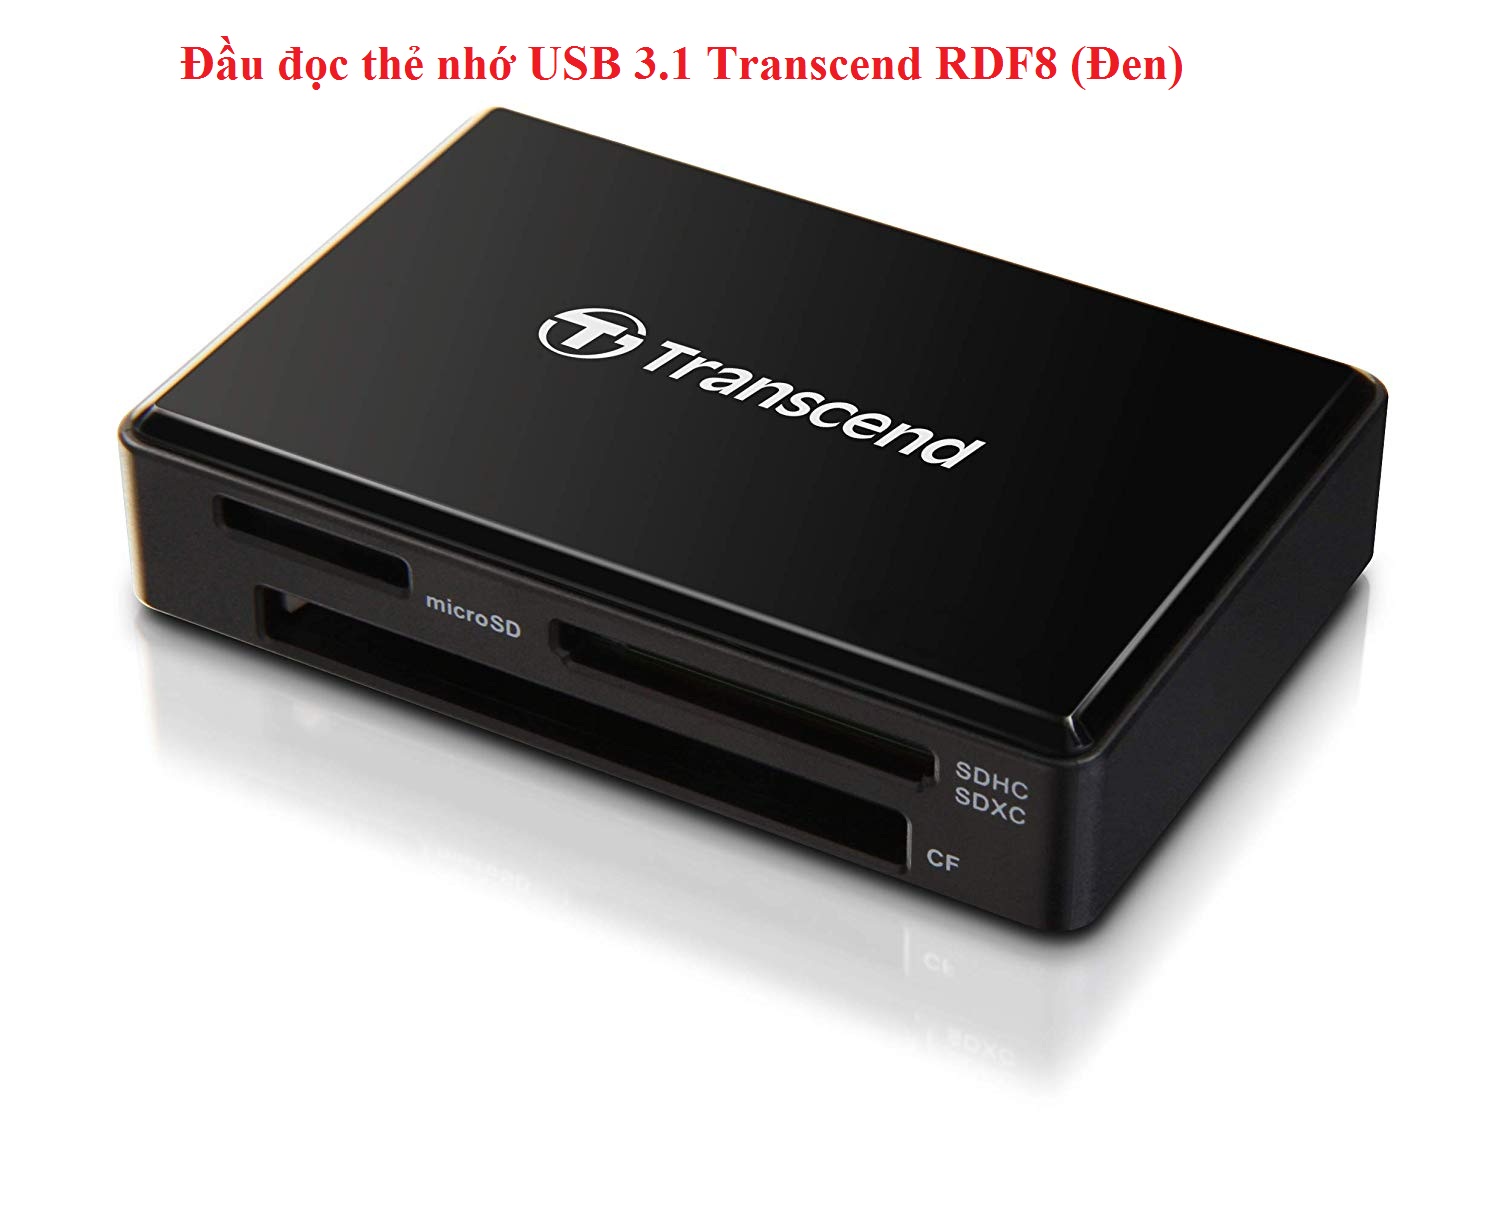 Đầu đọc thẻ nhớ USB 3.1 Transcend RDF8 Đen